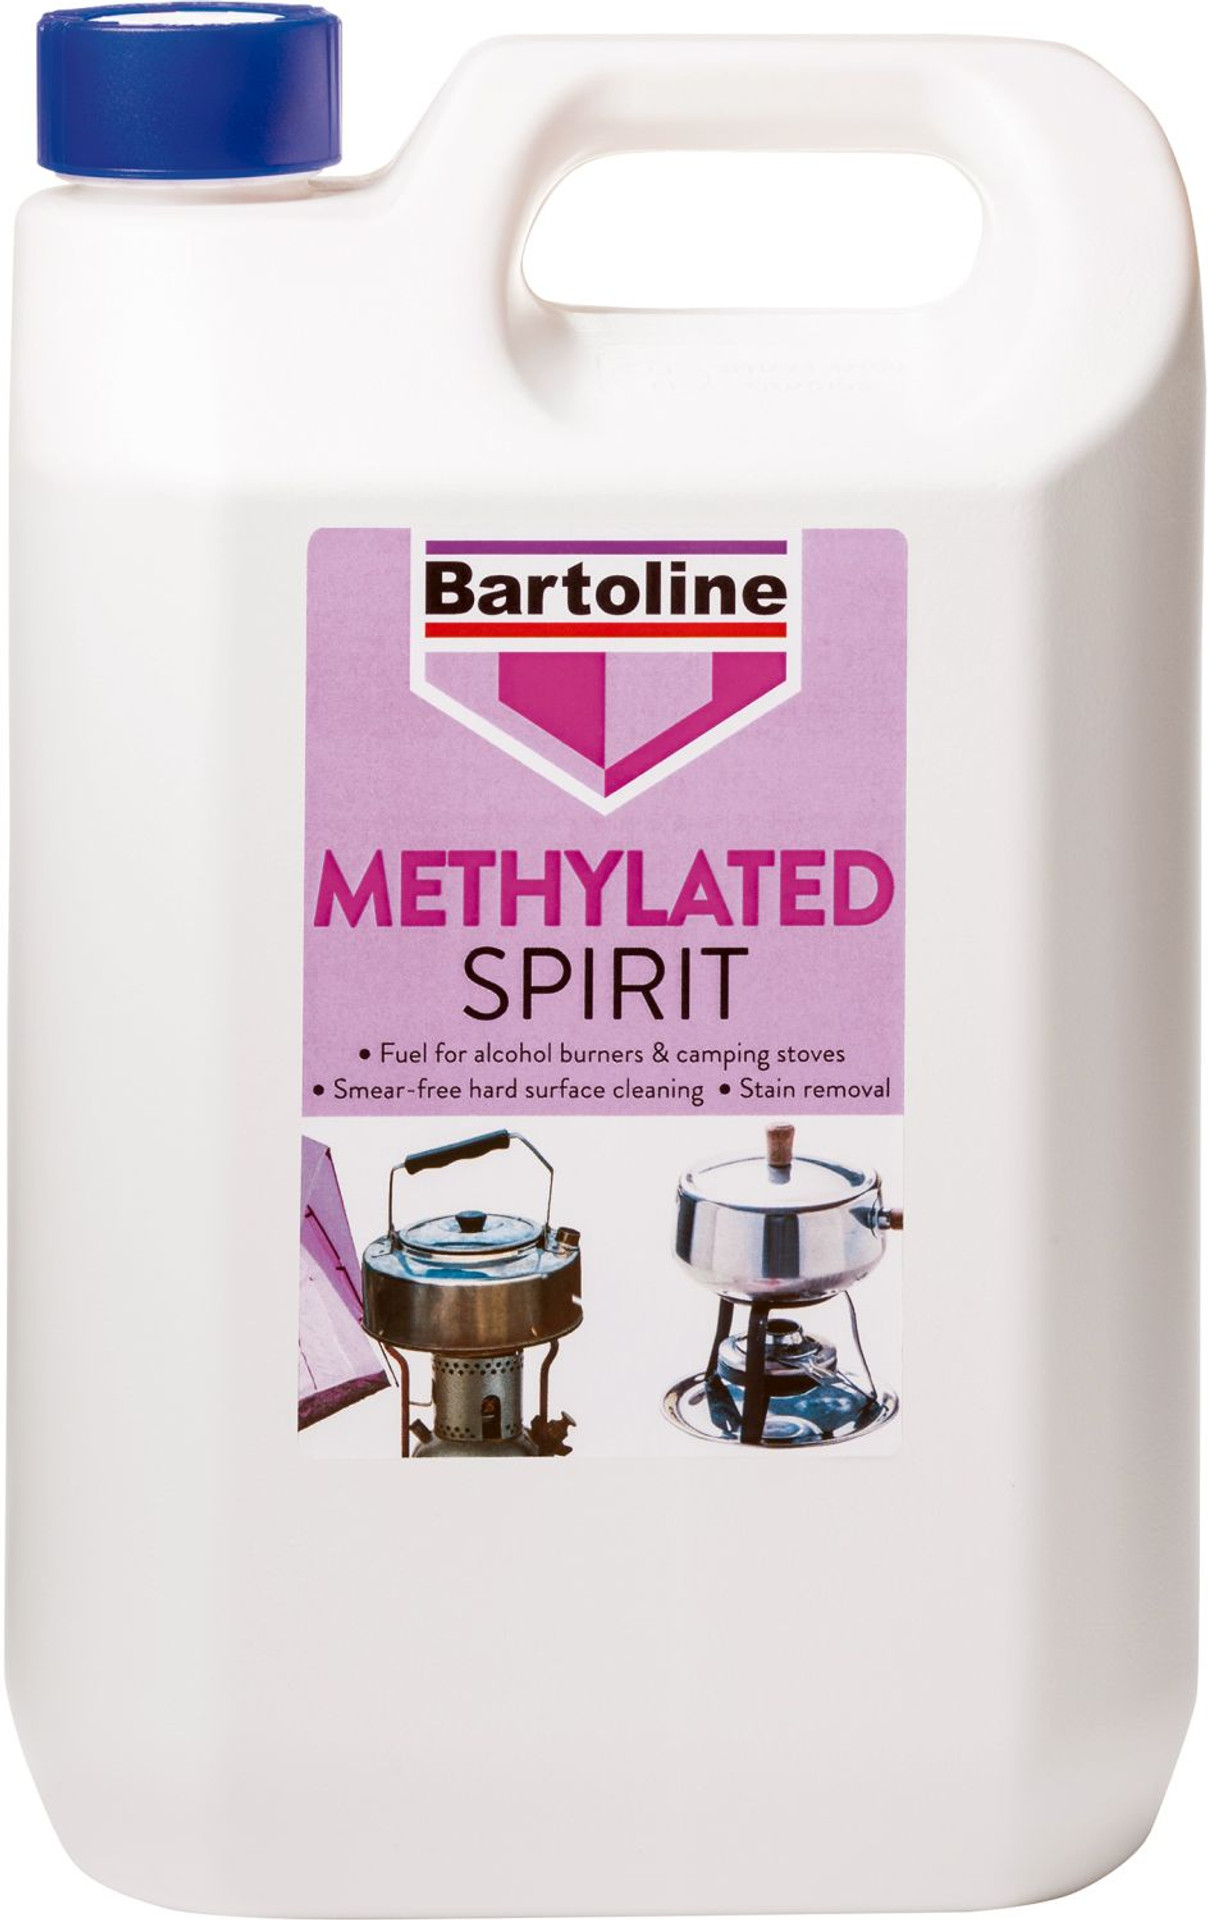 White Spirit vs. Methylated Spirit